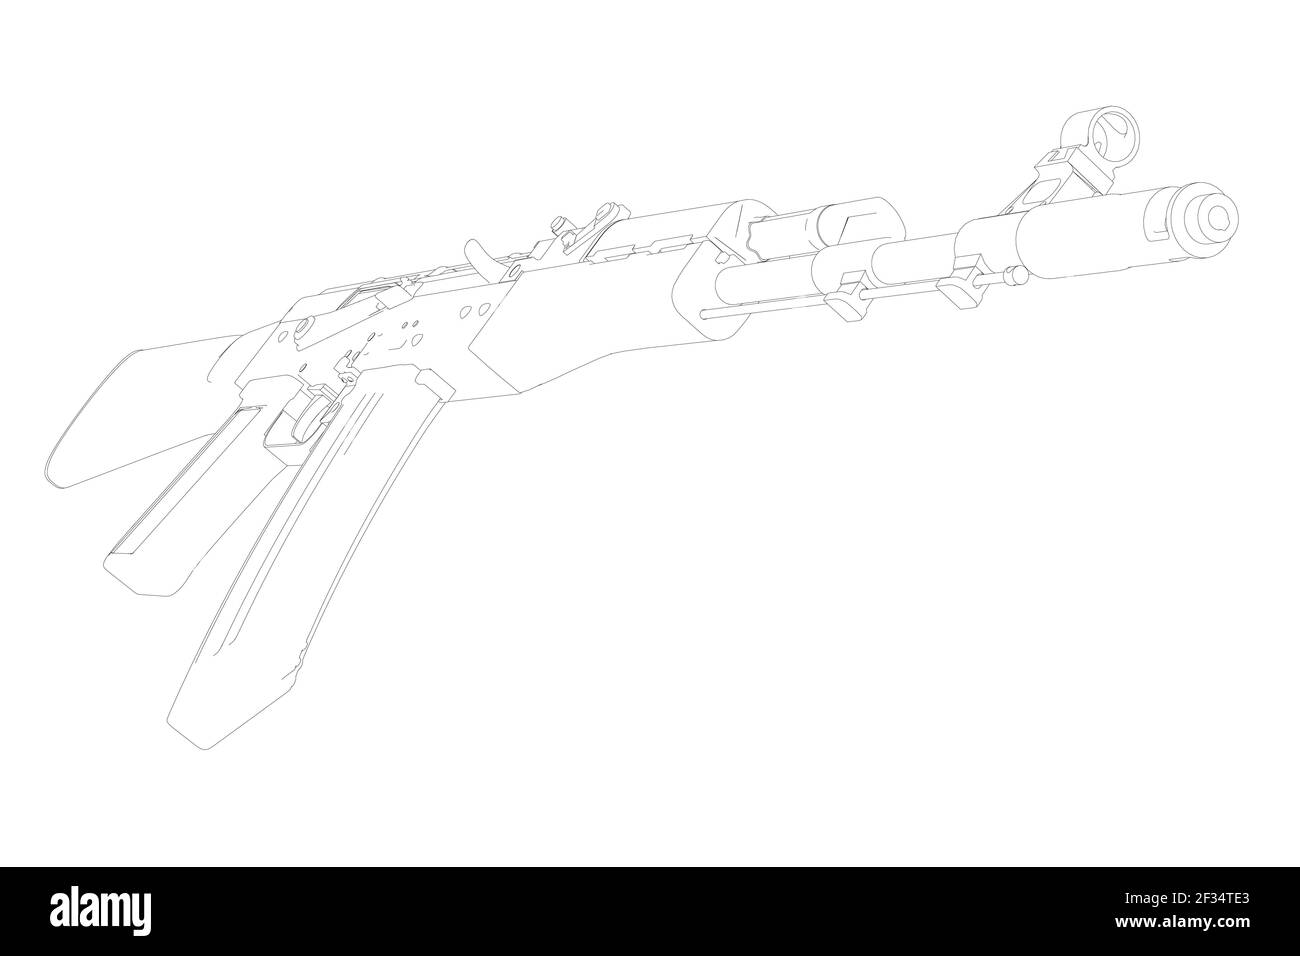 Le contour du fusil d'assaut Kalashnikov à partir de lignes noires isolées sur fond blanc. Illustration vectorielle. Illustration de Vecteur